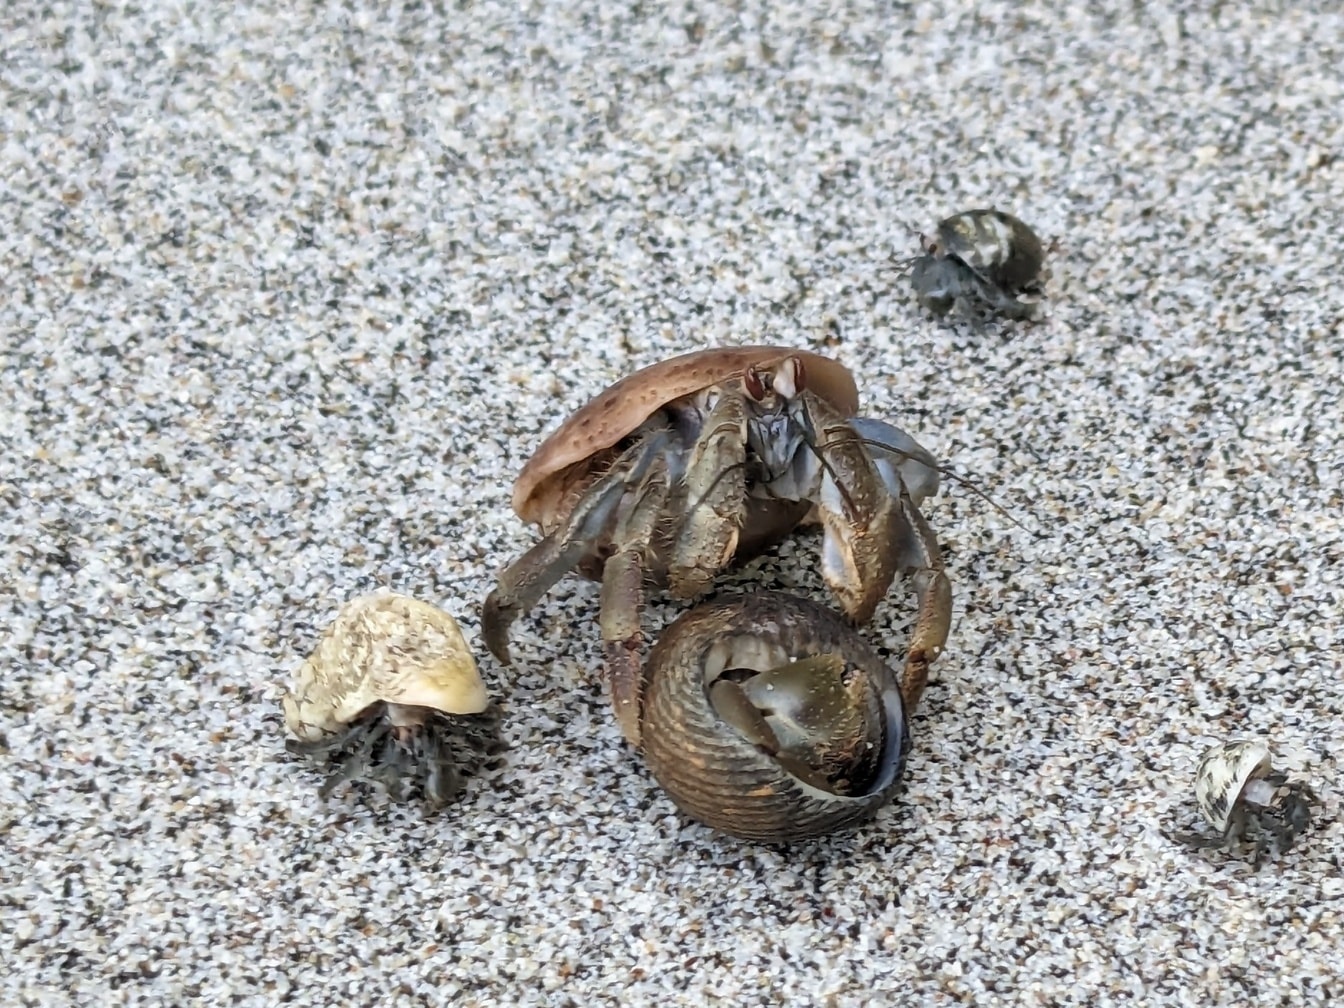 Caraïbische heremietkreeft (Coenobita clypeatus) en een shell op het zand